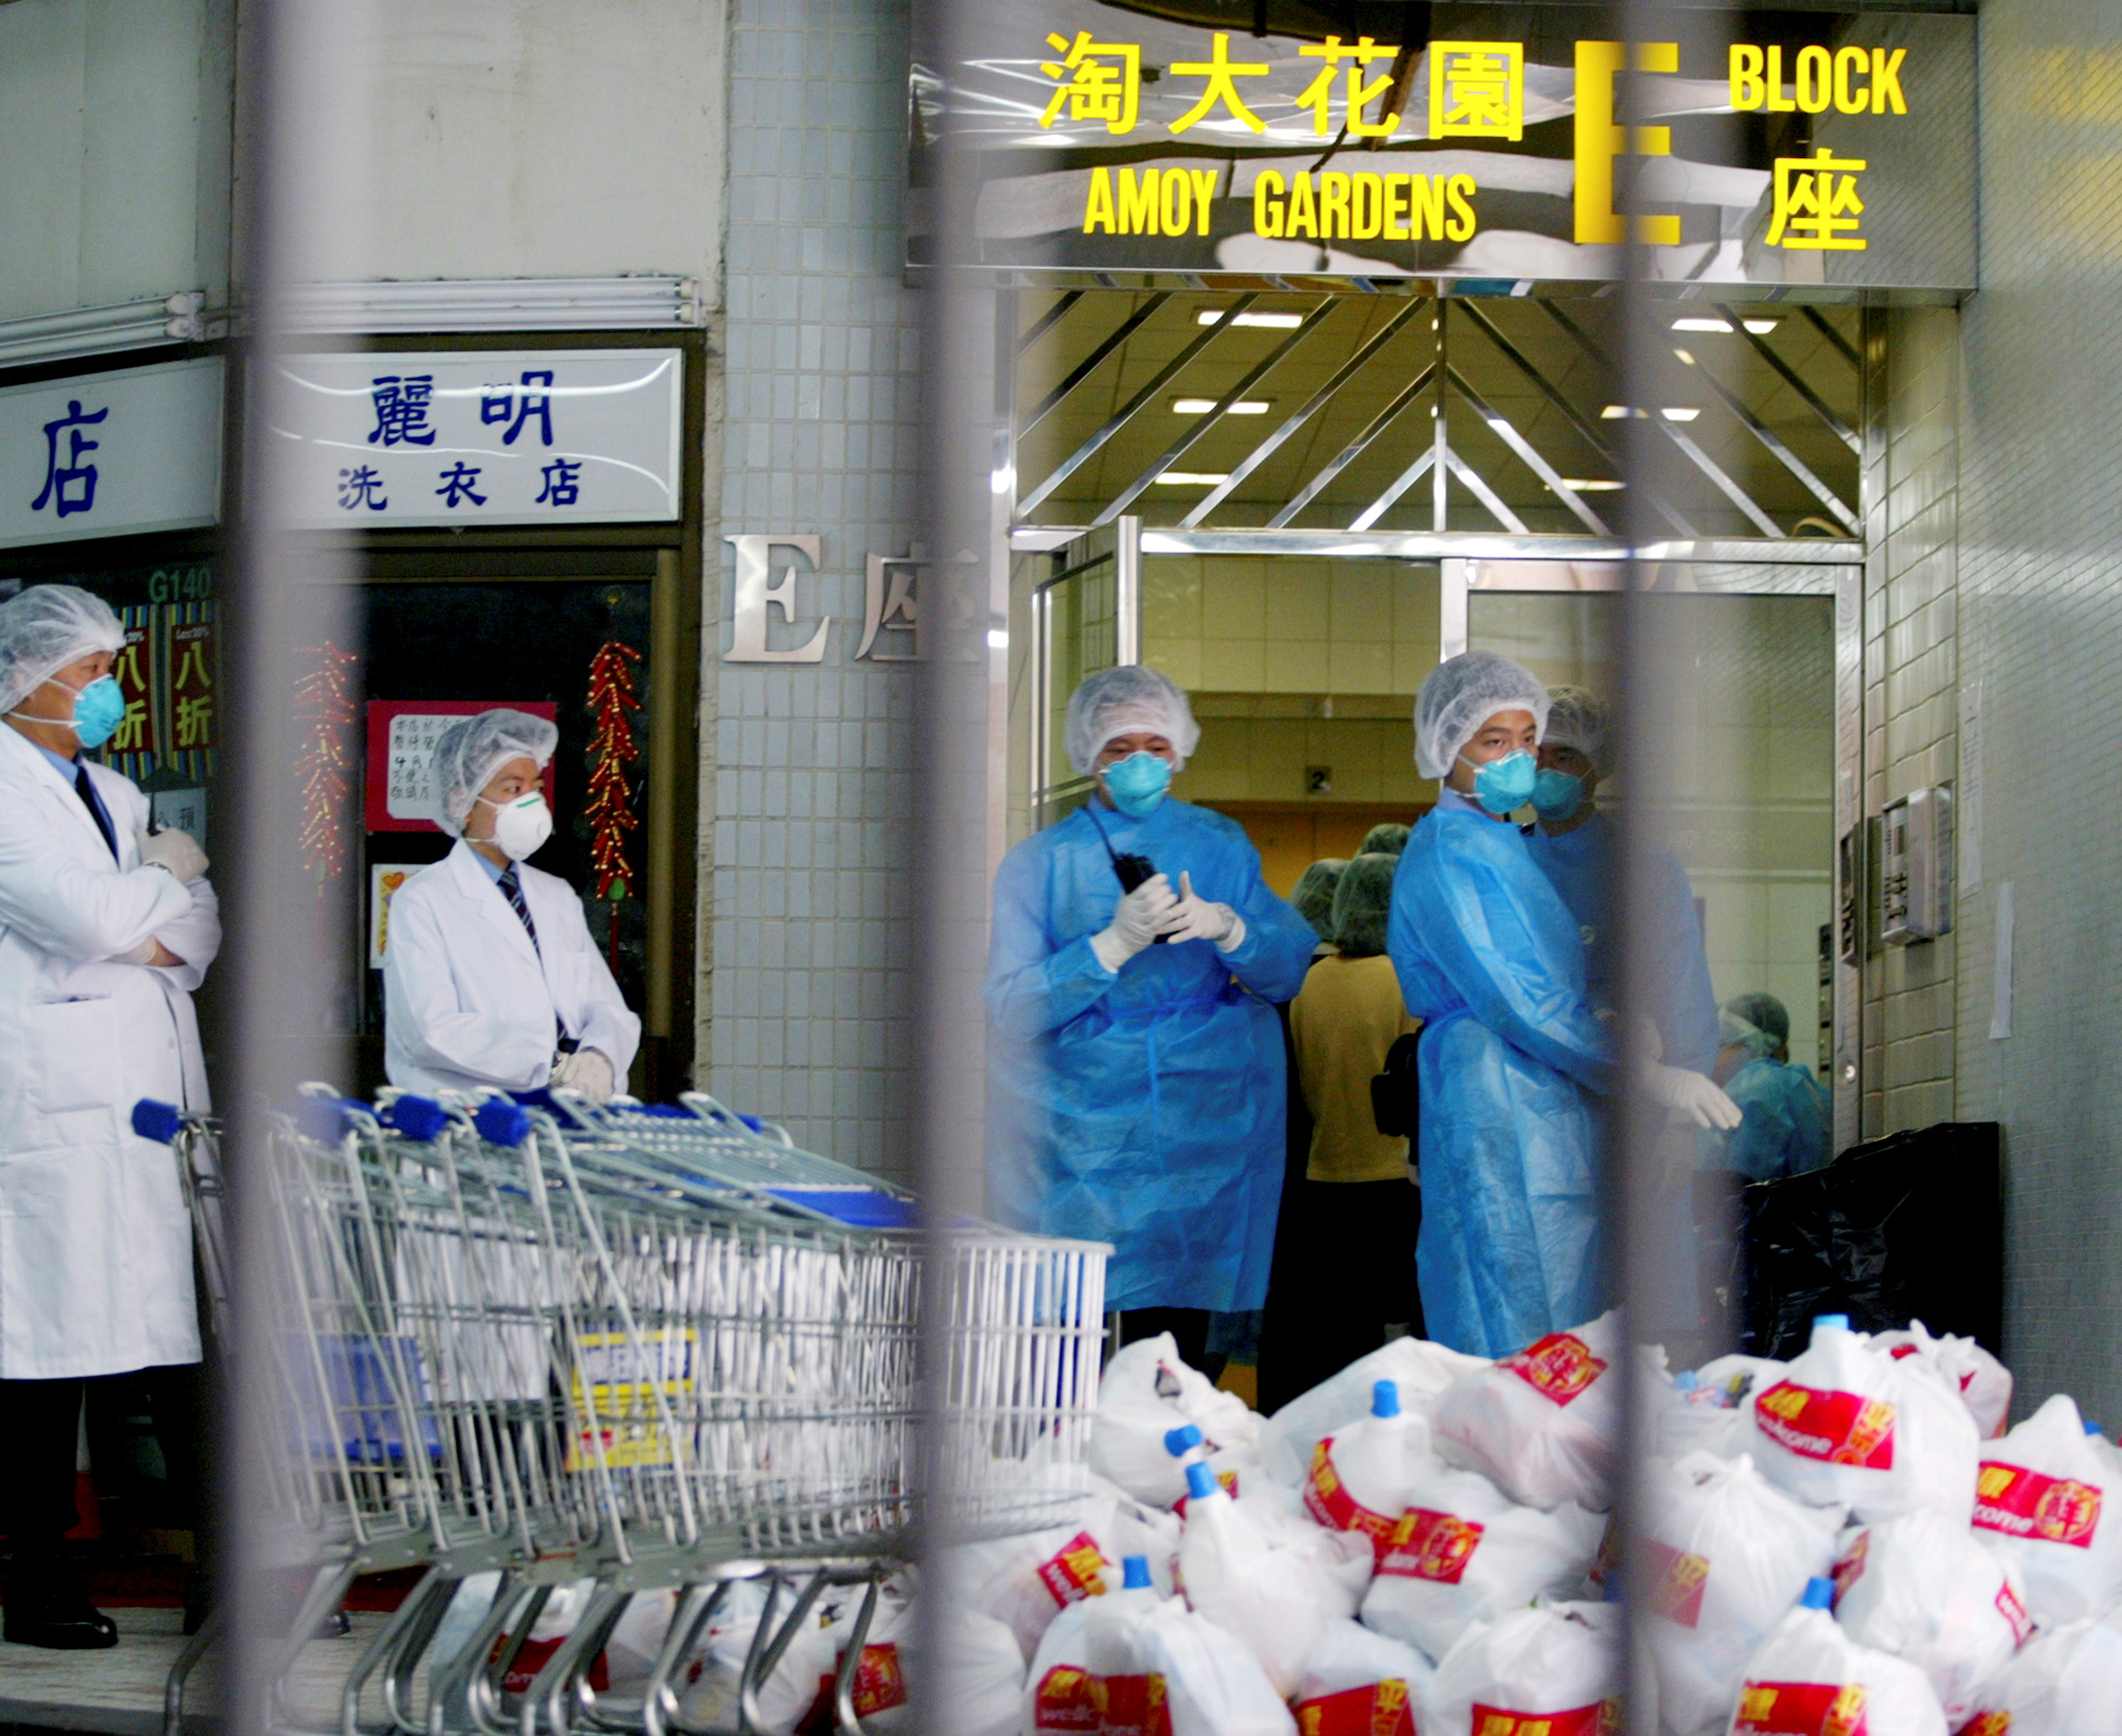 Coronavirus que ha matado a nueve personas en china “podría mutar y propagarse”